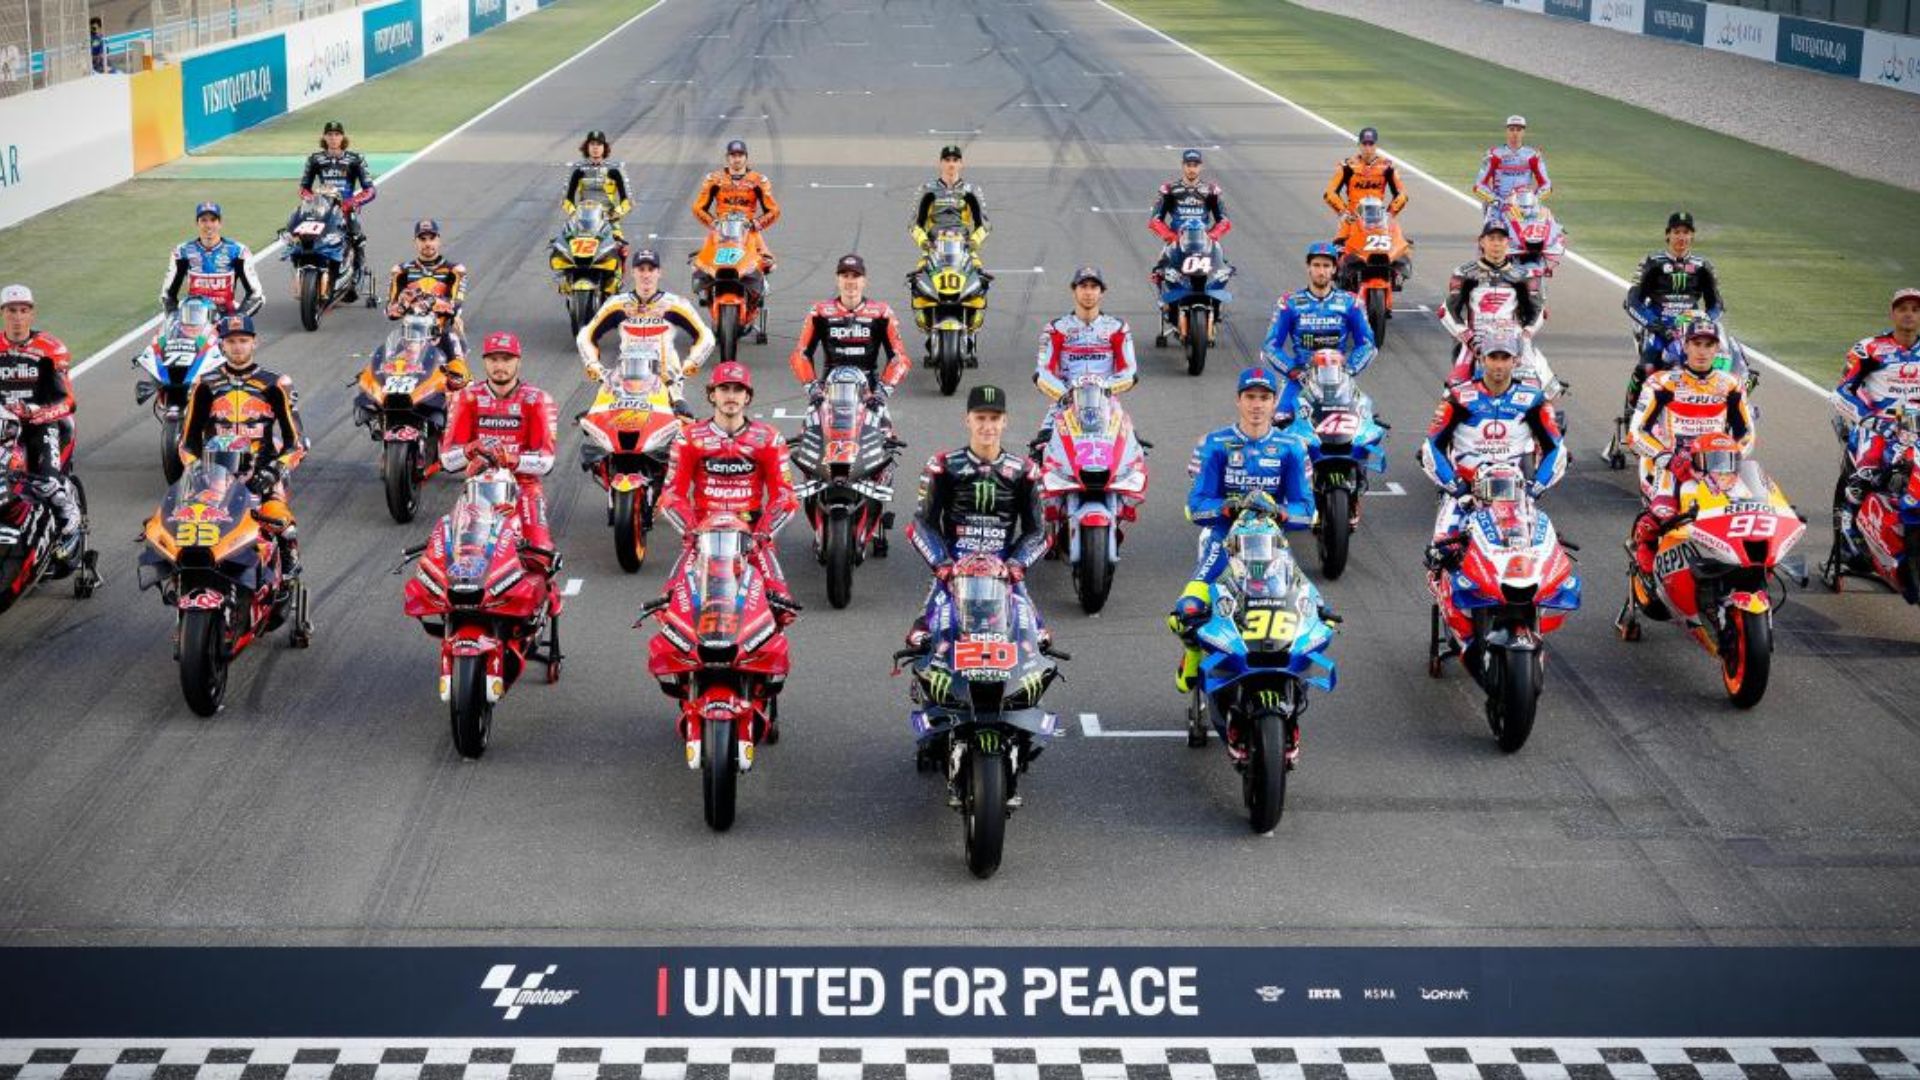 A 3ª corrida de Moto GP terá lugar nos Estados Unidos